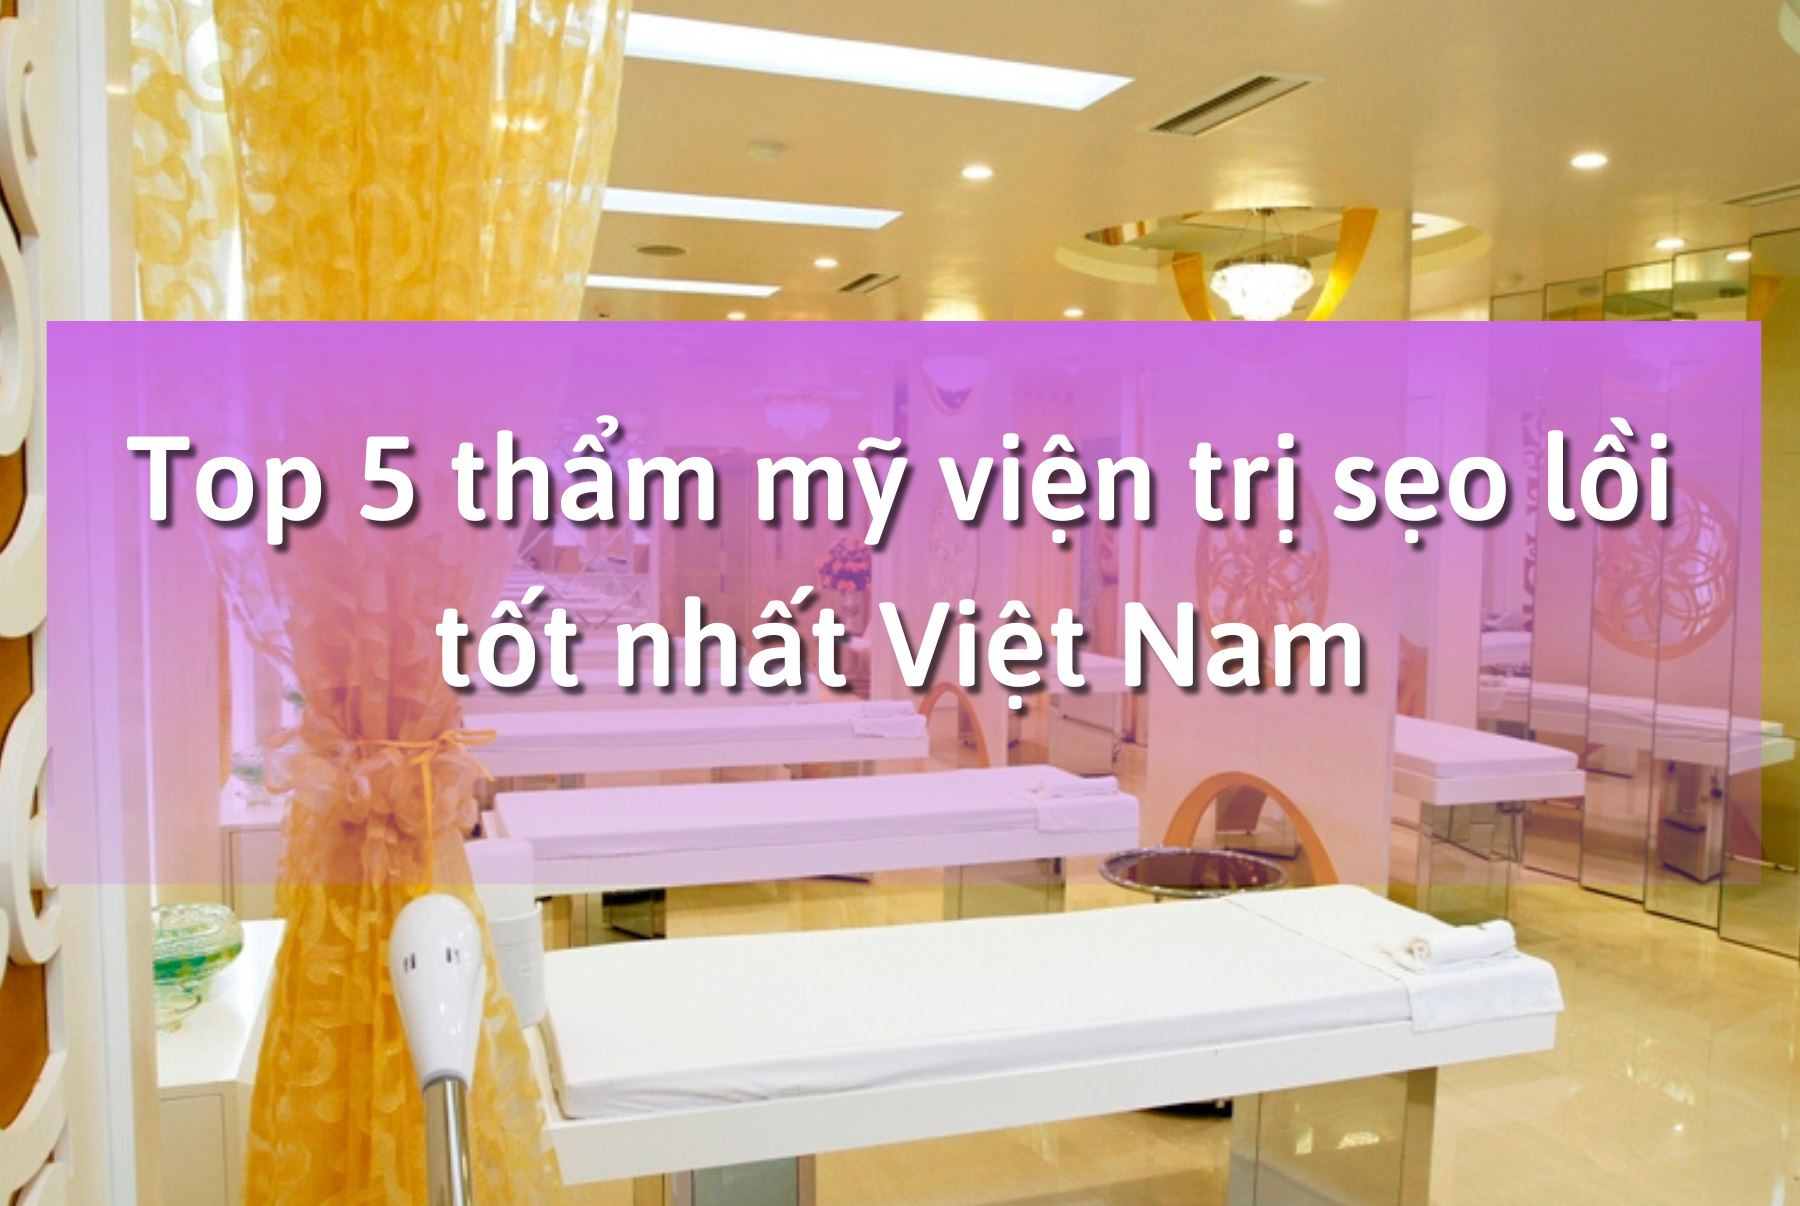 Top 5 thẩm mỹ viện trị sẹo lồi tốt nhất Việt Nam